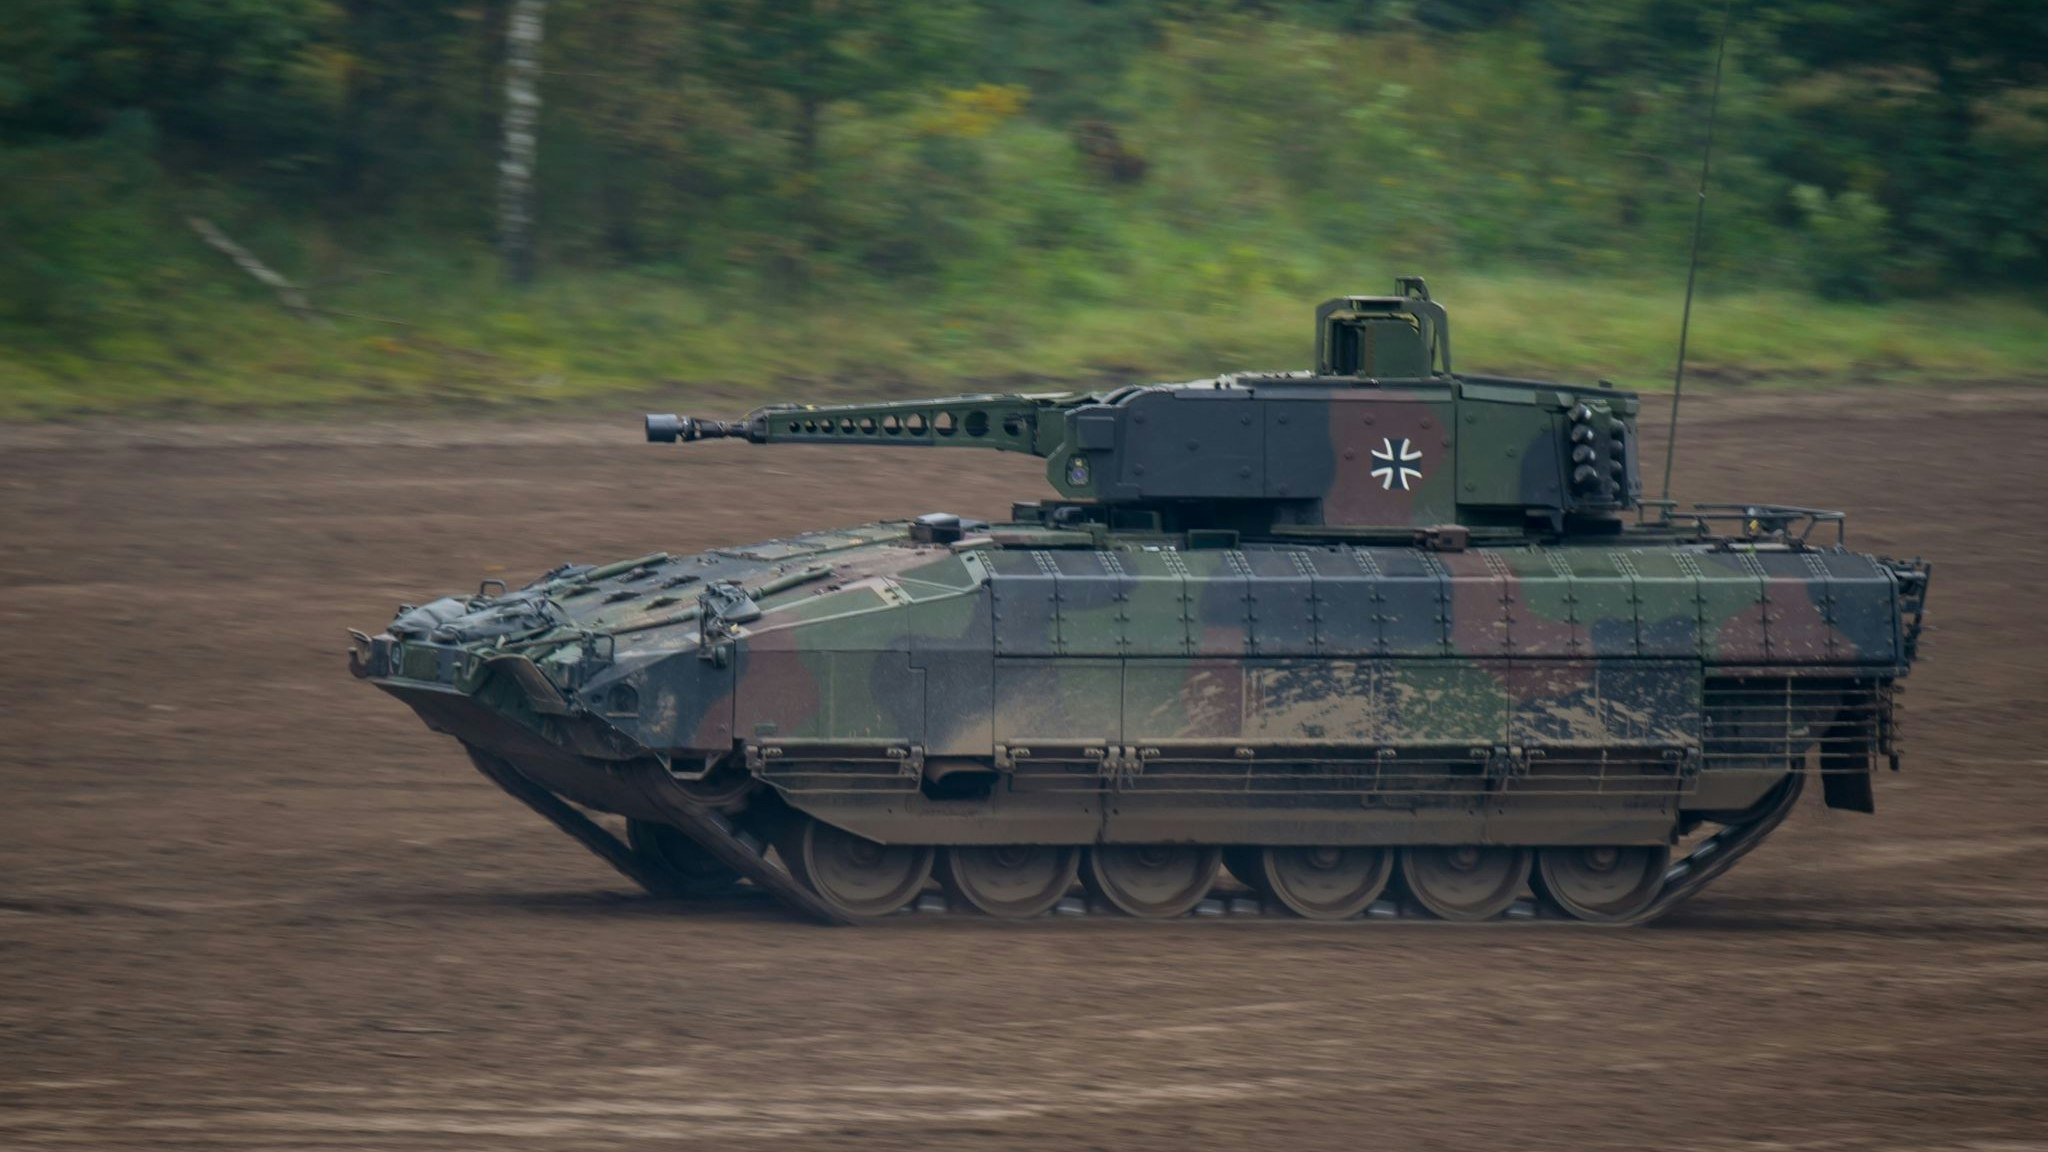 Der Schützenpanzer Puma war bei Übungen der Bundeswehr komplett ausgefallen. Foto: Philipp Schulze / dpa